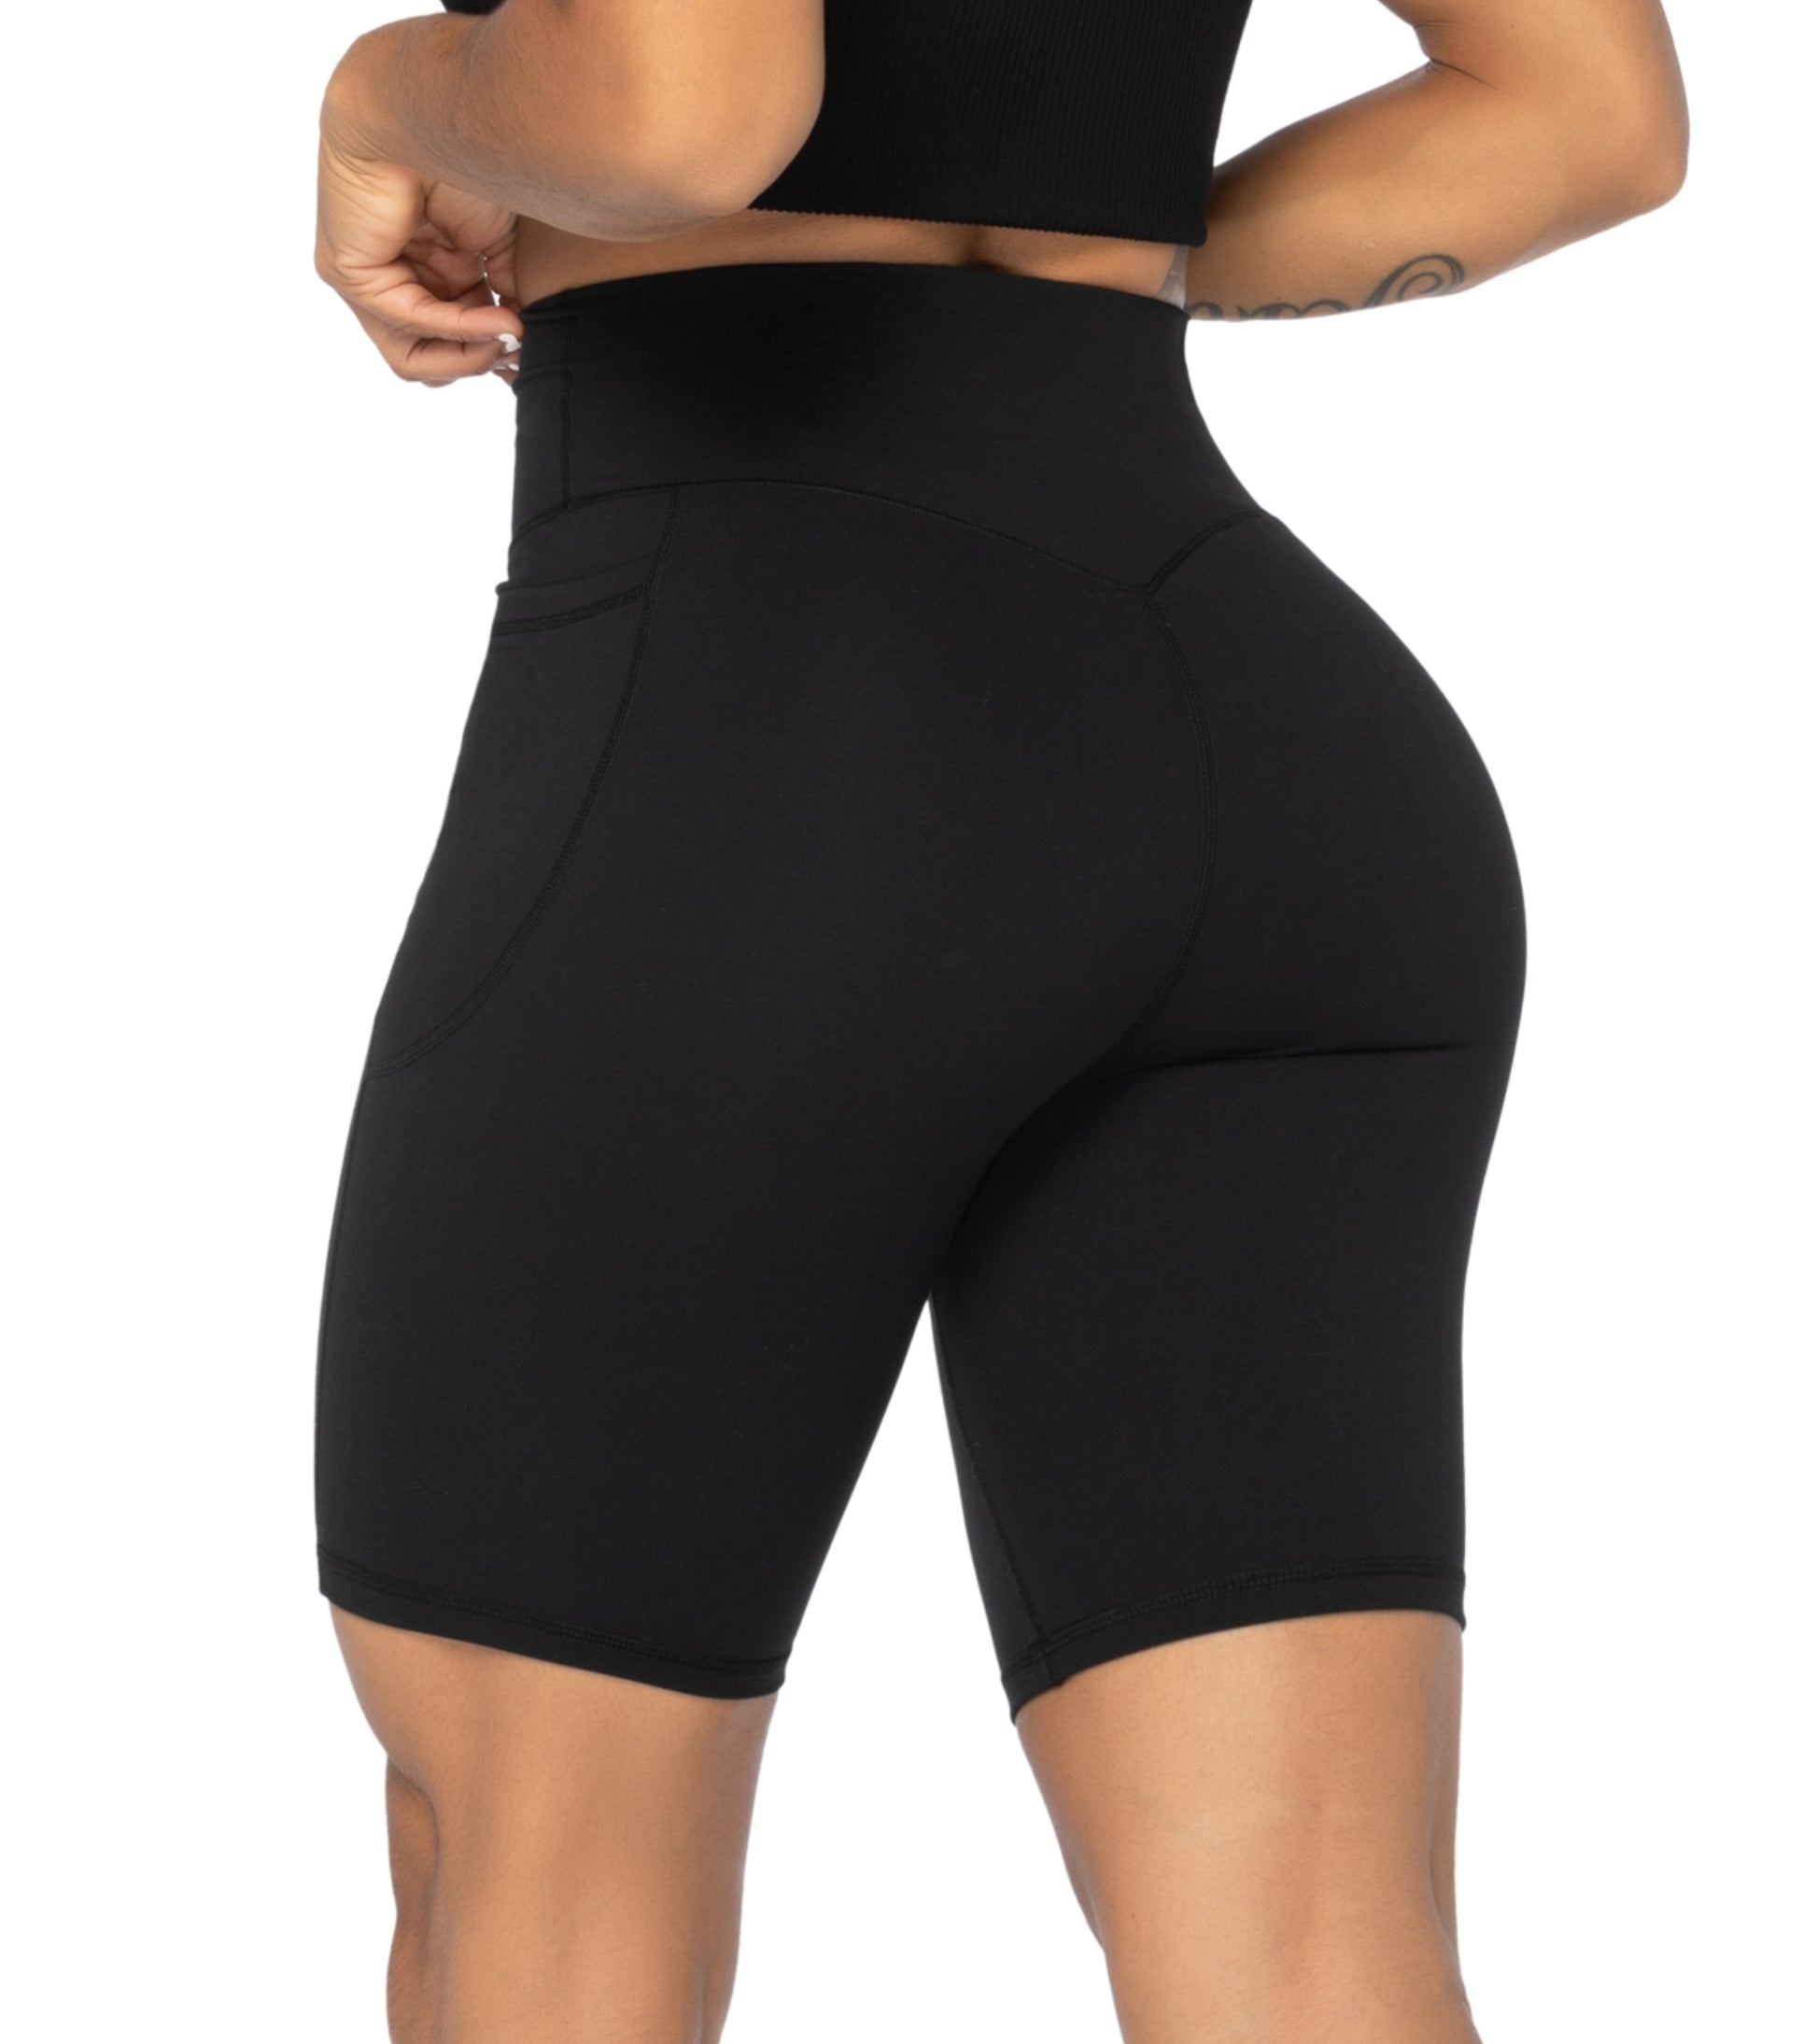 Sunzel Women's 2½ Biker High Waisted Yoga Workout Shorts Black Size Medium